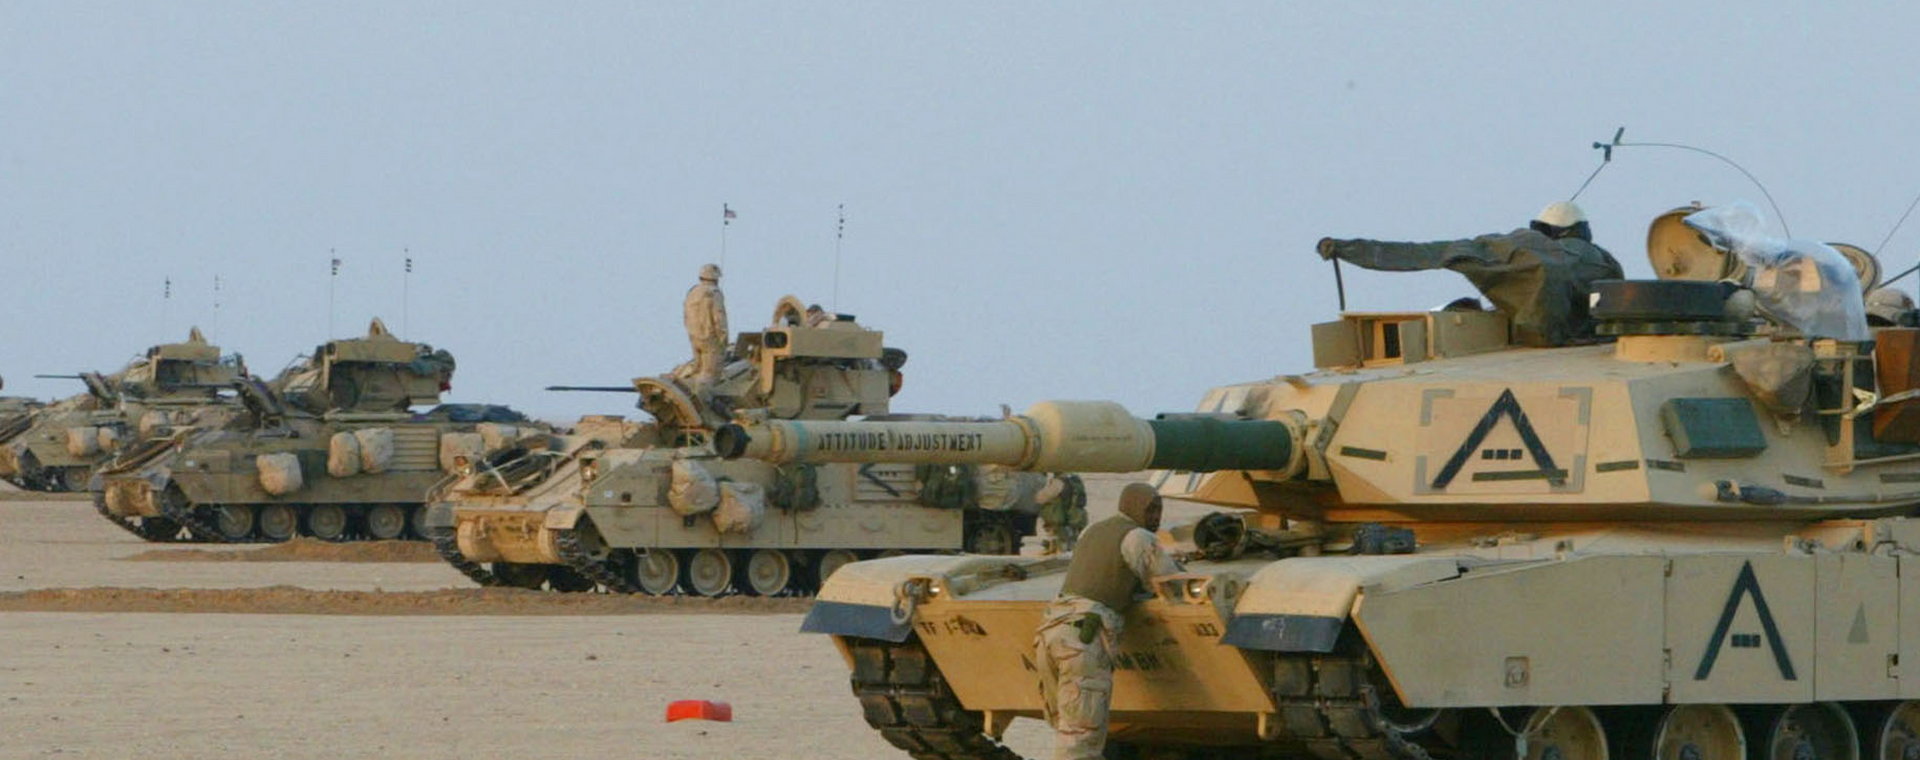 Pojazdy M1A1 Abrams i Bradley ustawiają się w szeregu, przygotowując się do przemarszu przez pustynię 18 grudnia 2002 r. w pobliżu granicy z Irakiem w Kuwejcie. Są częścią Pancernej Grupy Zadaniowej 1-64, uczestniczącej w operacji Pustynna Wiosna w pobliżu granicy z Irakiem.